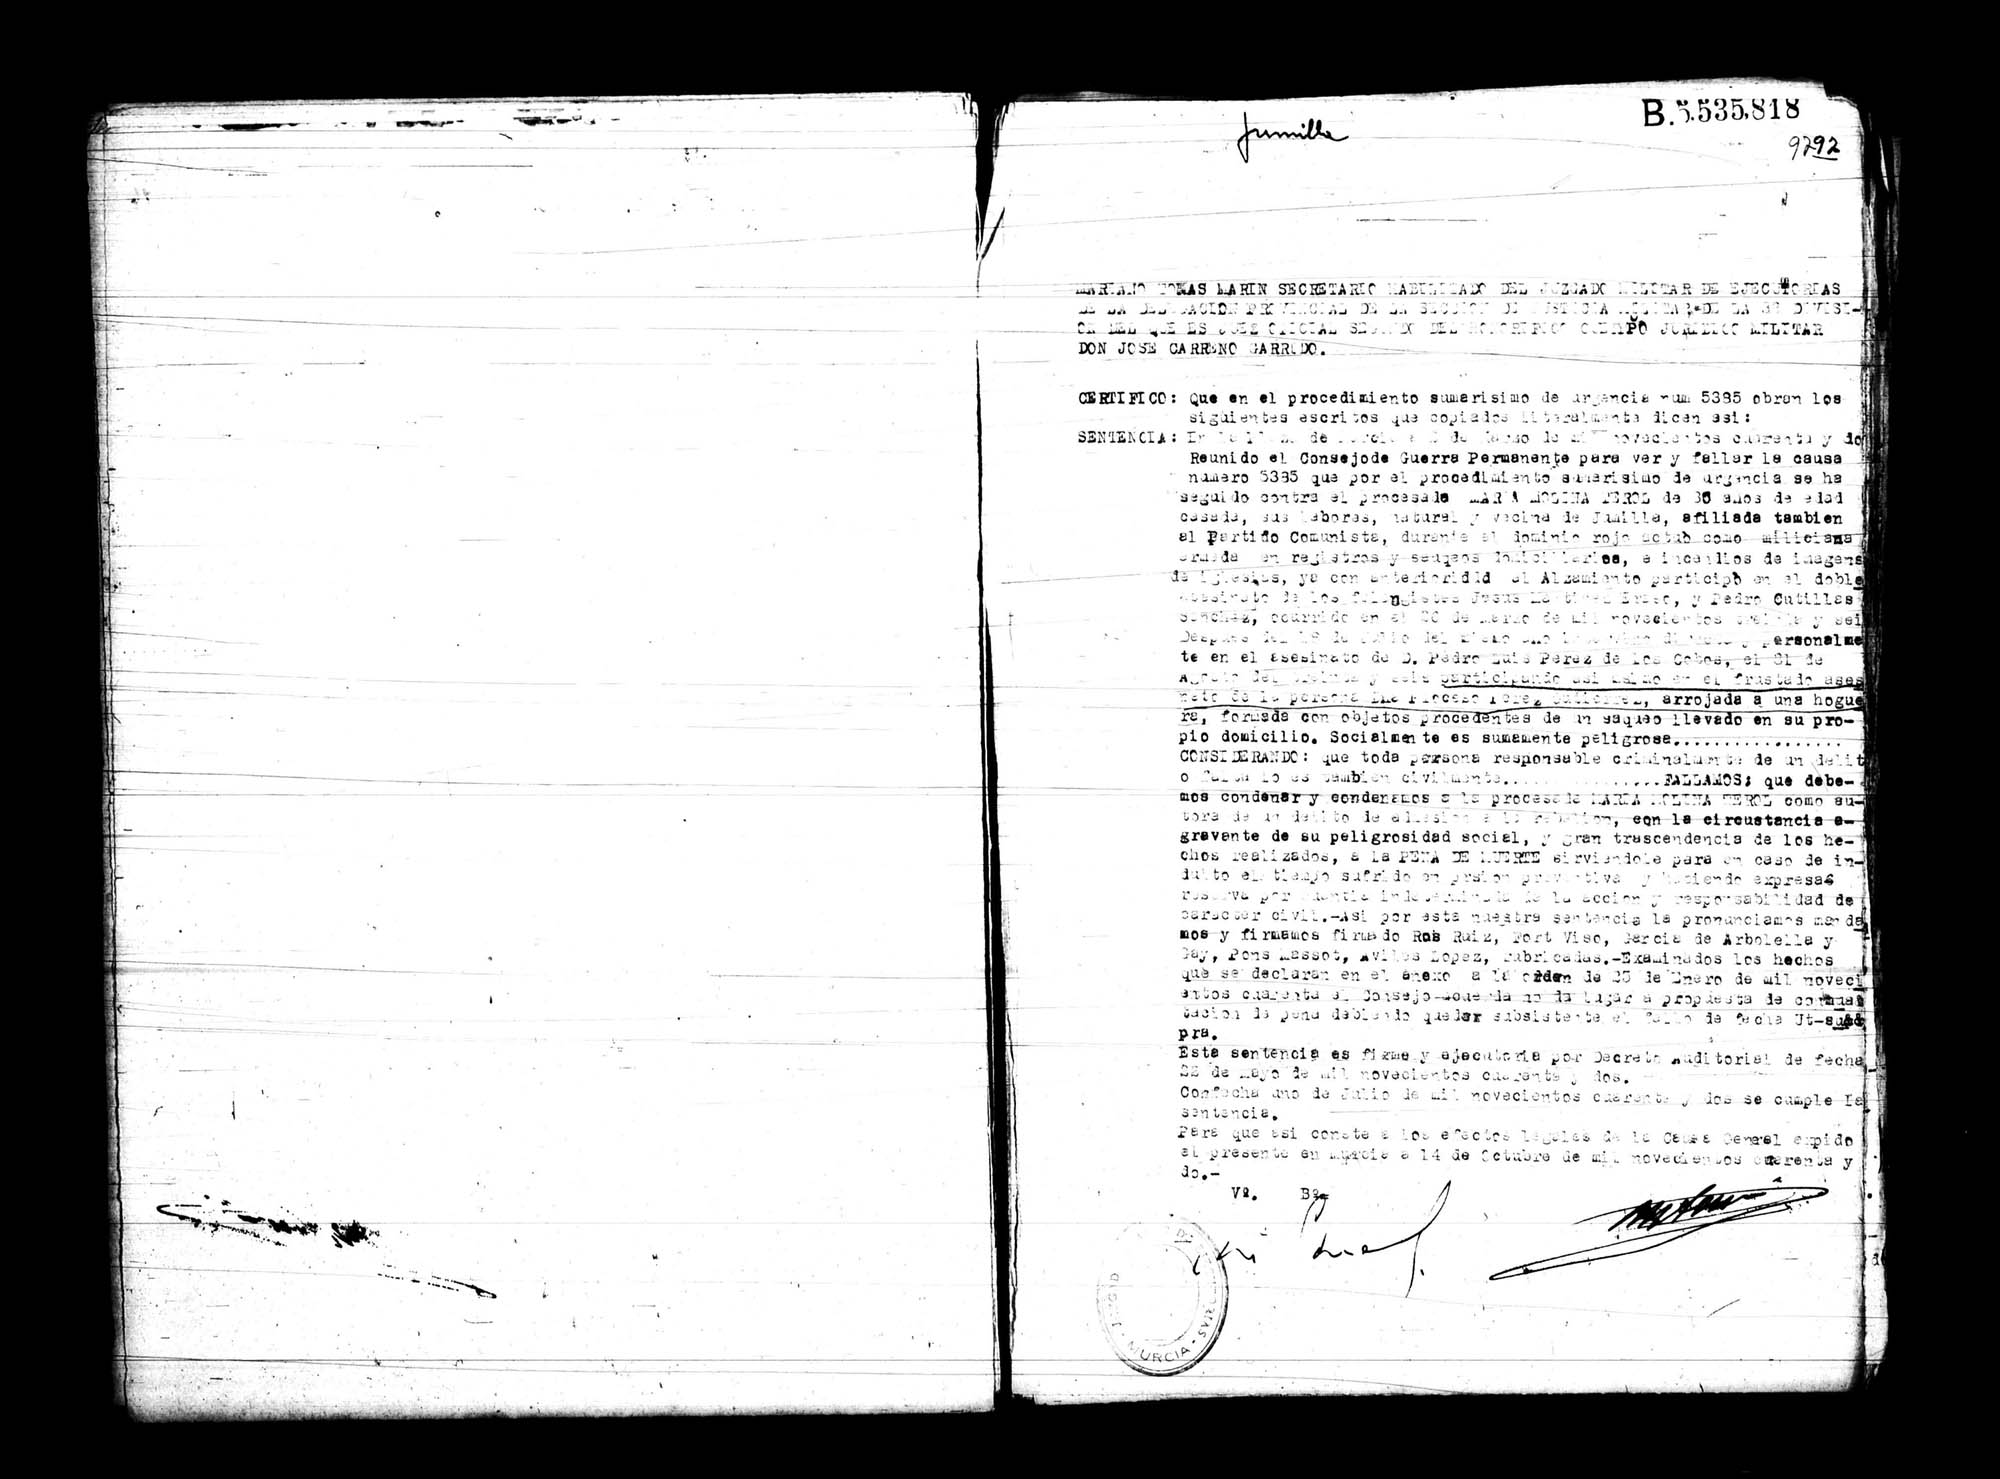 Certificado de la sentencia pronunciada contra María Molina Terol, causa 5385, el 2 de marzo de 1942 en Murcia.